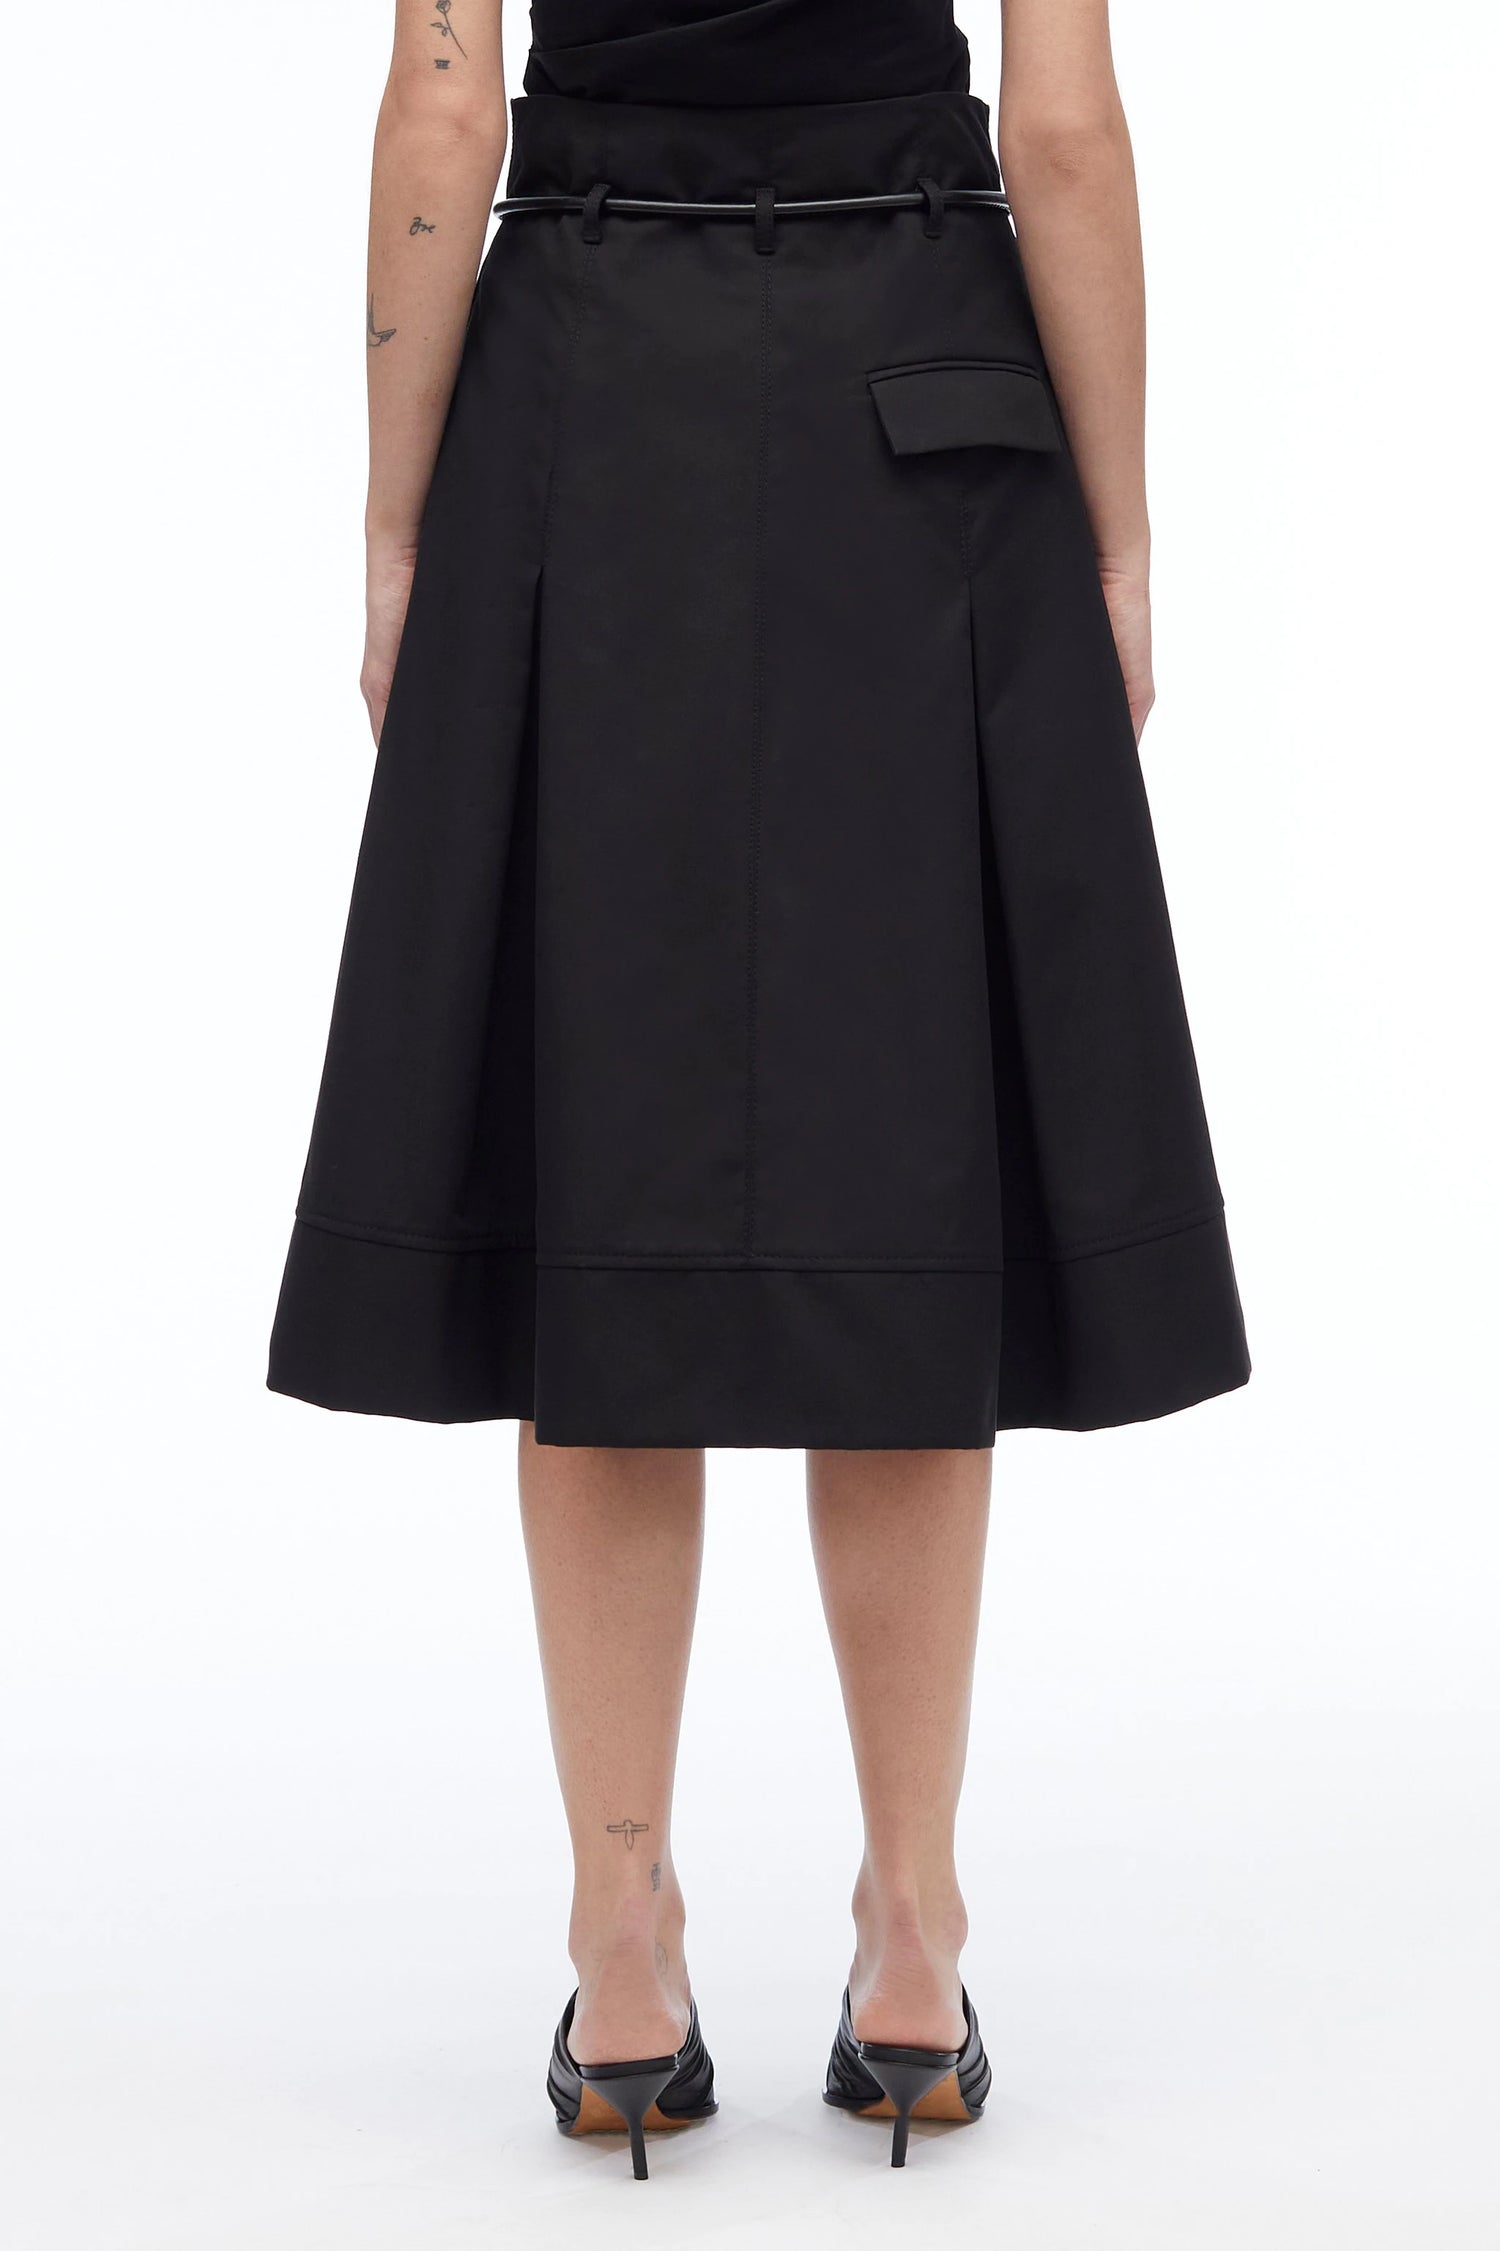 Origami skirt, black